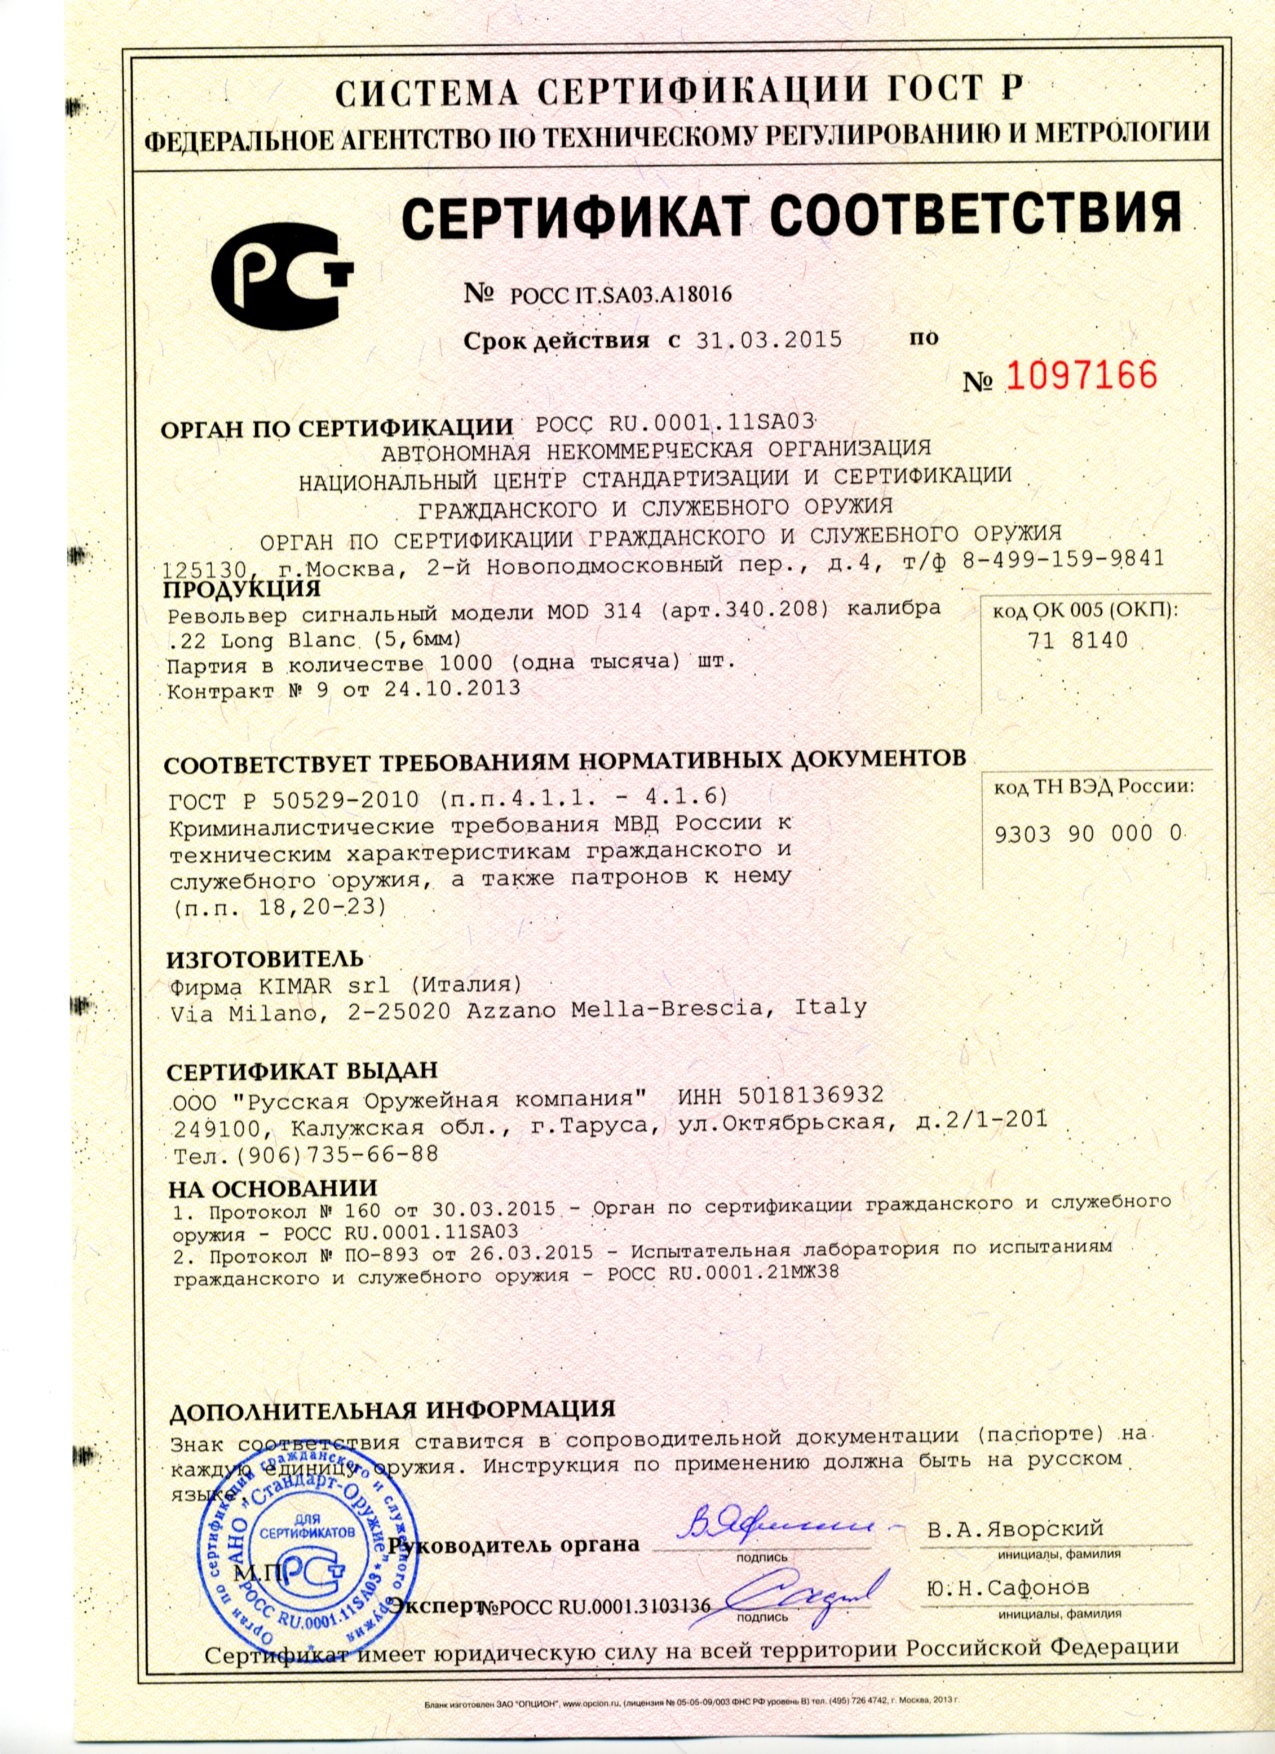 Сертификат на револьвер сигнальный MOD 314, кал. 5,6мм  Long Blanc (Италия)